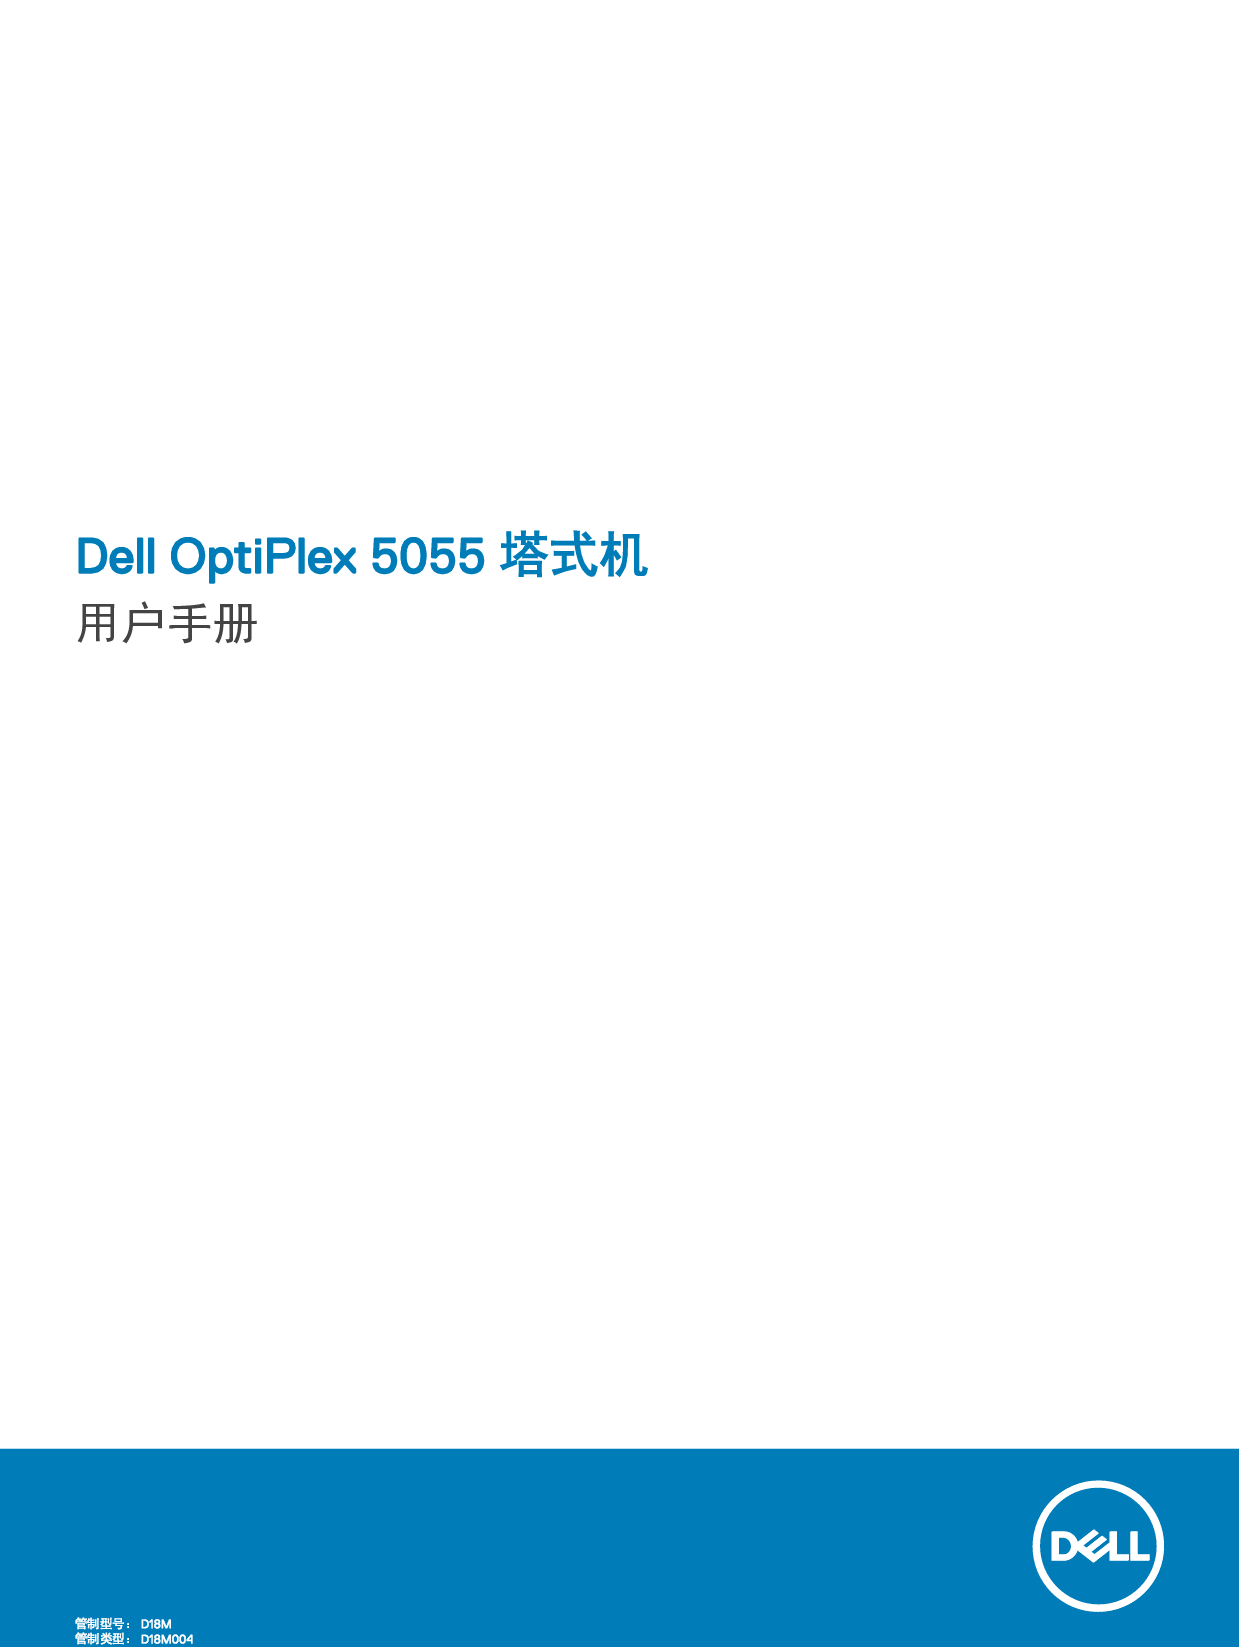 戴尔 Dell Optiplex 5055 RYZEN CPU 塔式 用户手册 封面